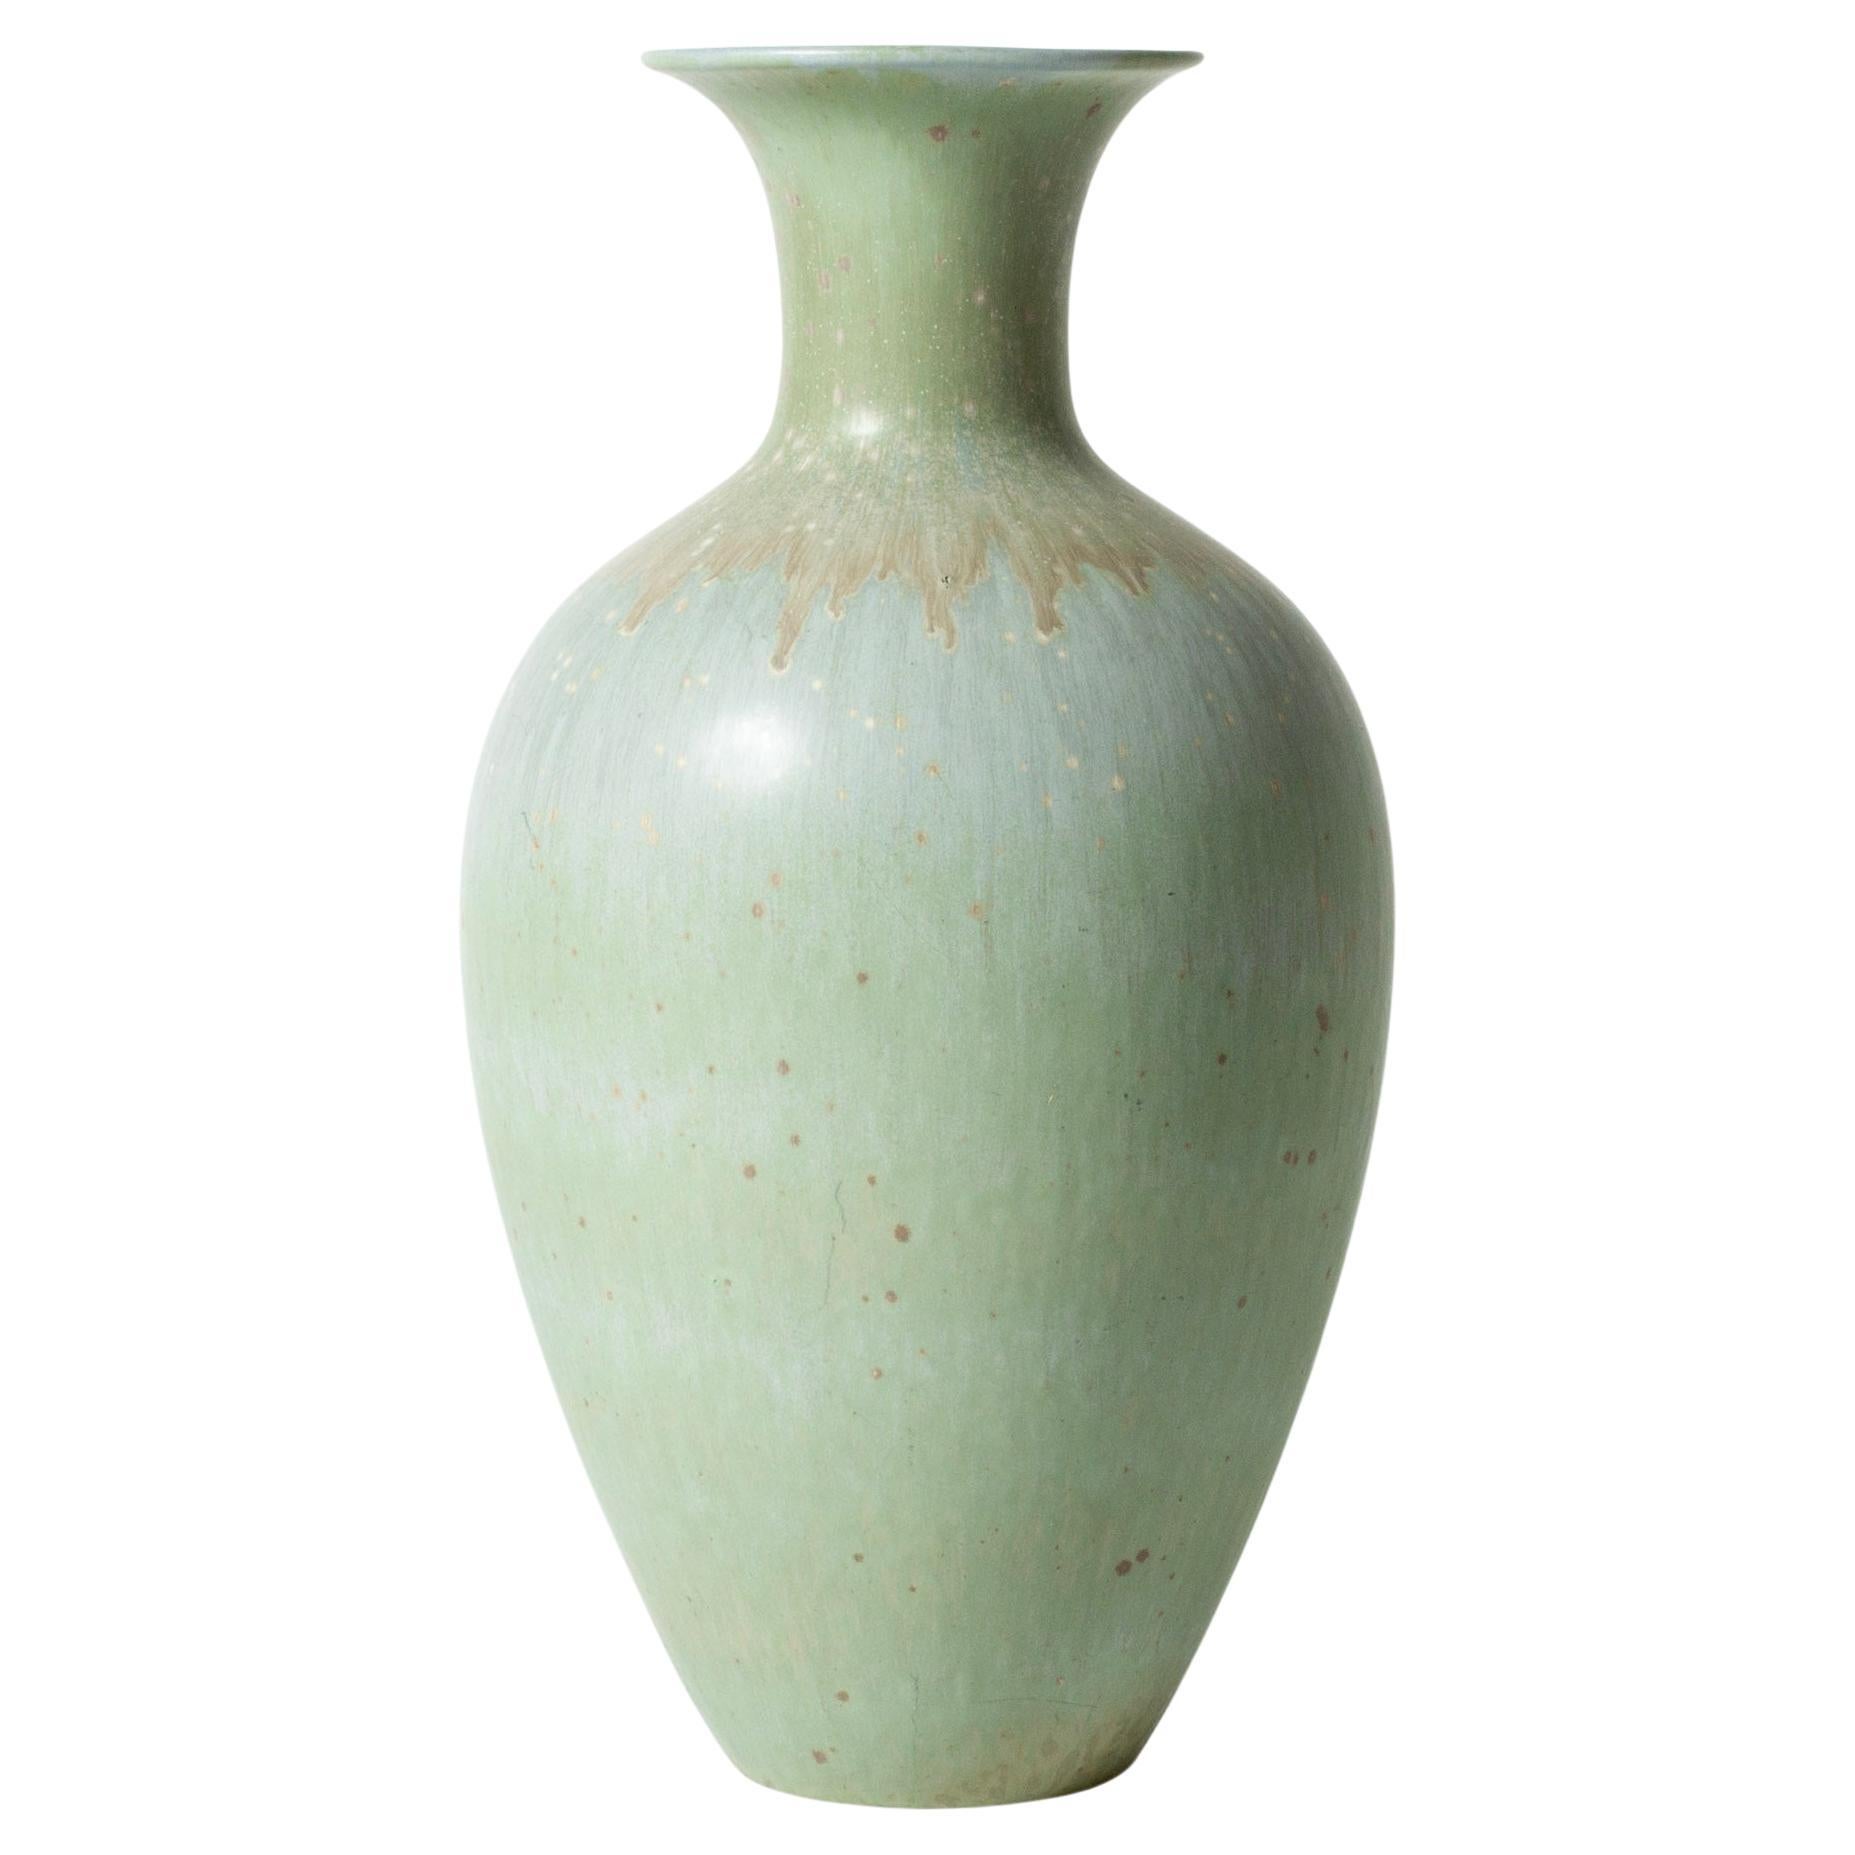 Vintage Midcentury Stoneware Floor Vase by Gunnar Nylund, Sweden, 1940s For Sale